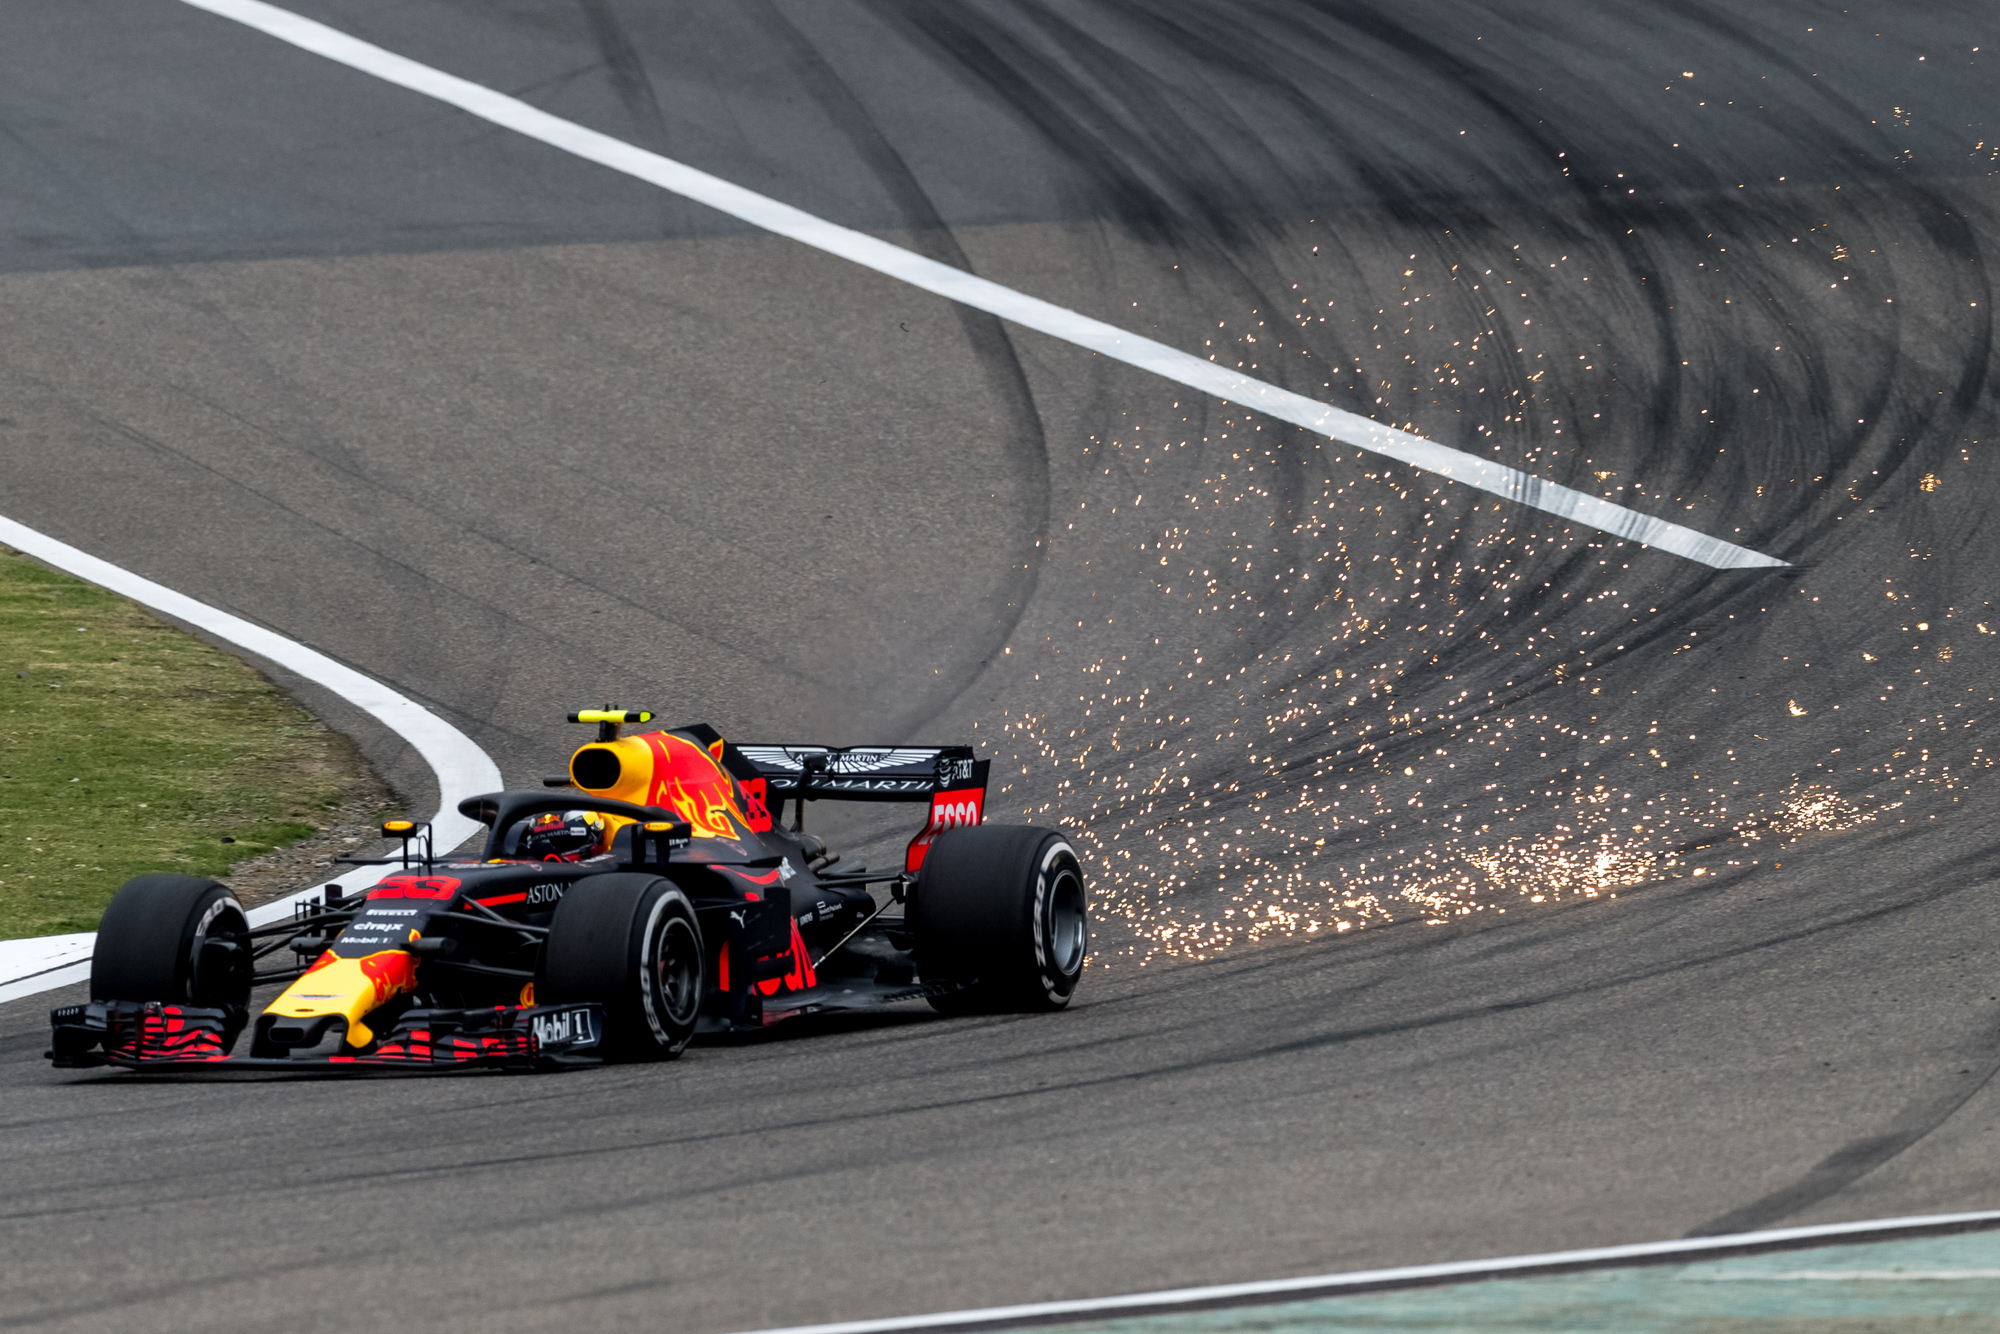 Formule 1 zavede nový formát pro sobotní sprinty. První závod podle nových pravidel se pojede už o víkendu v Ázerbájdžánu